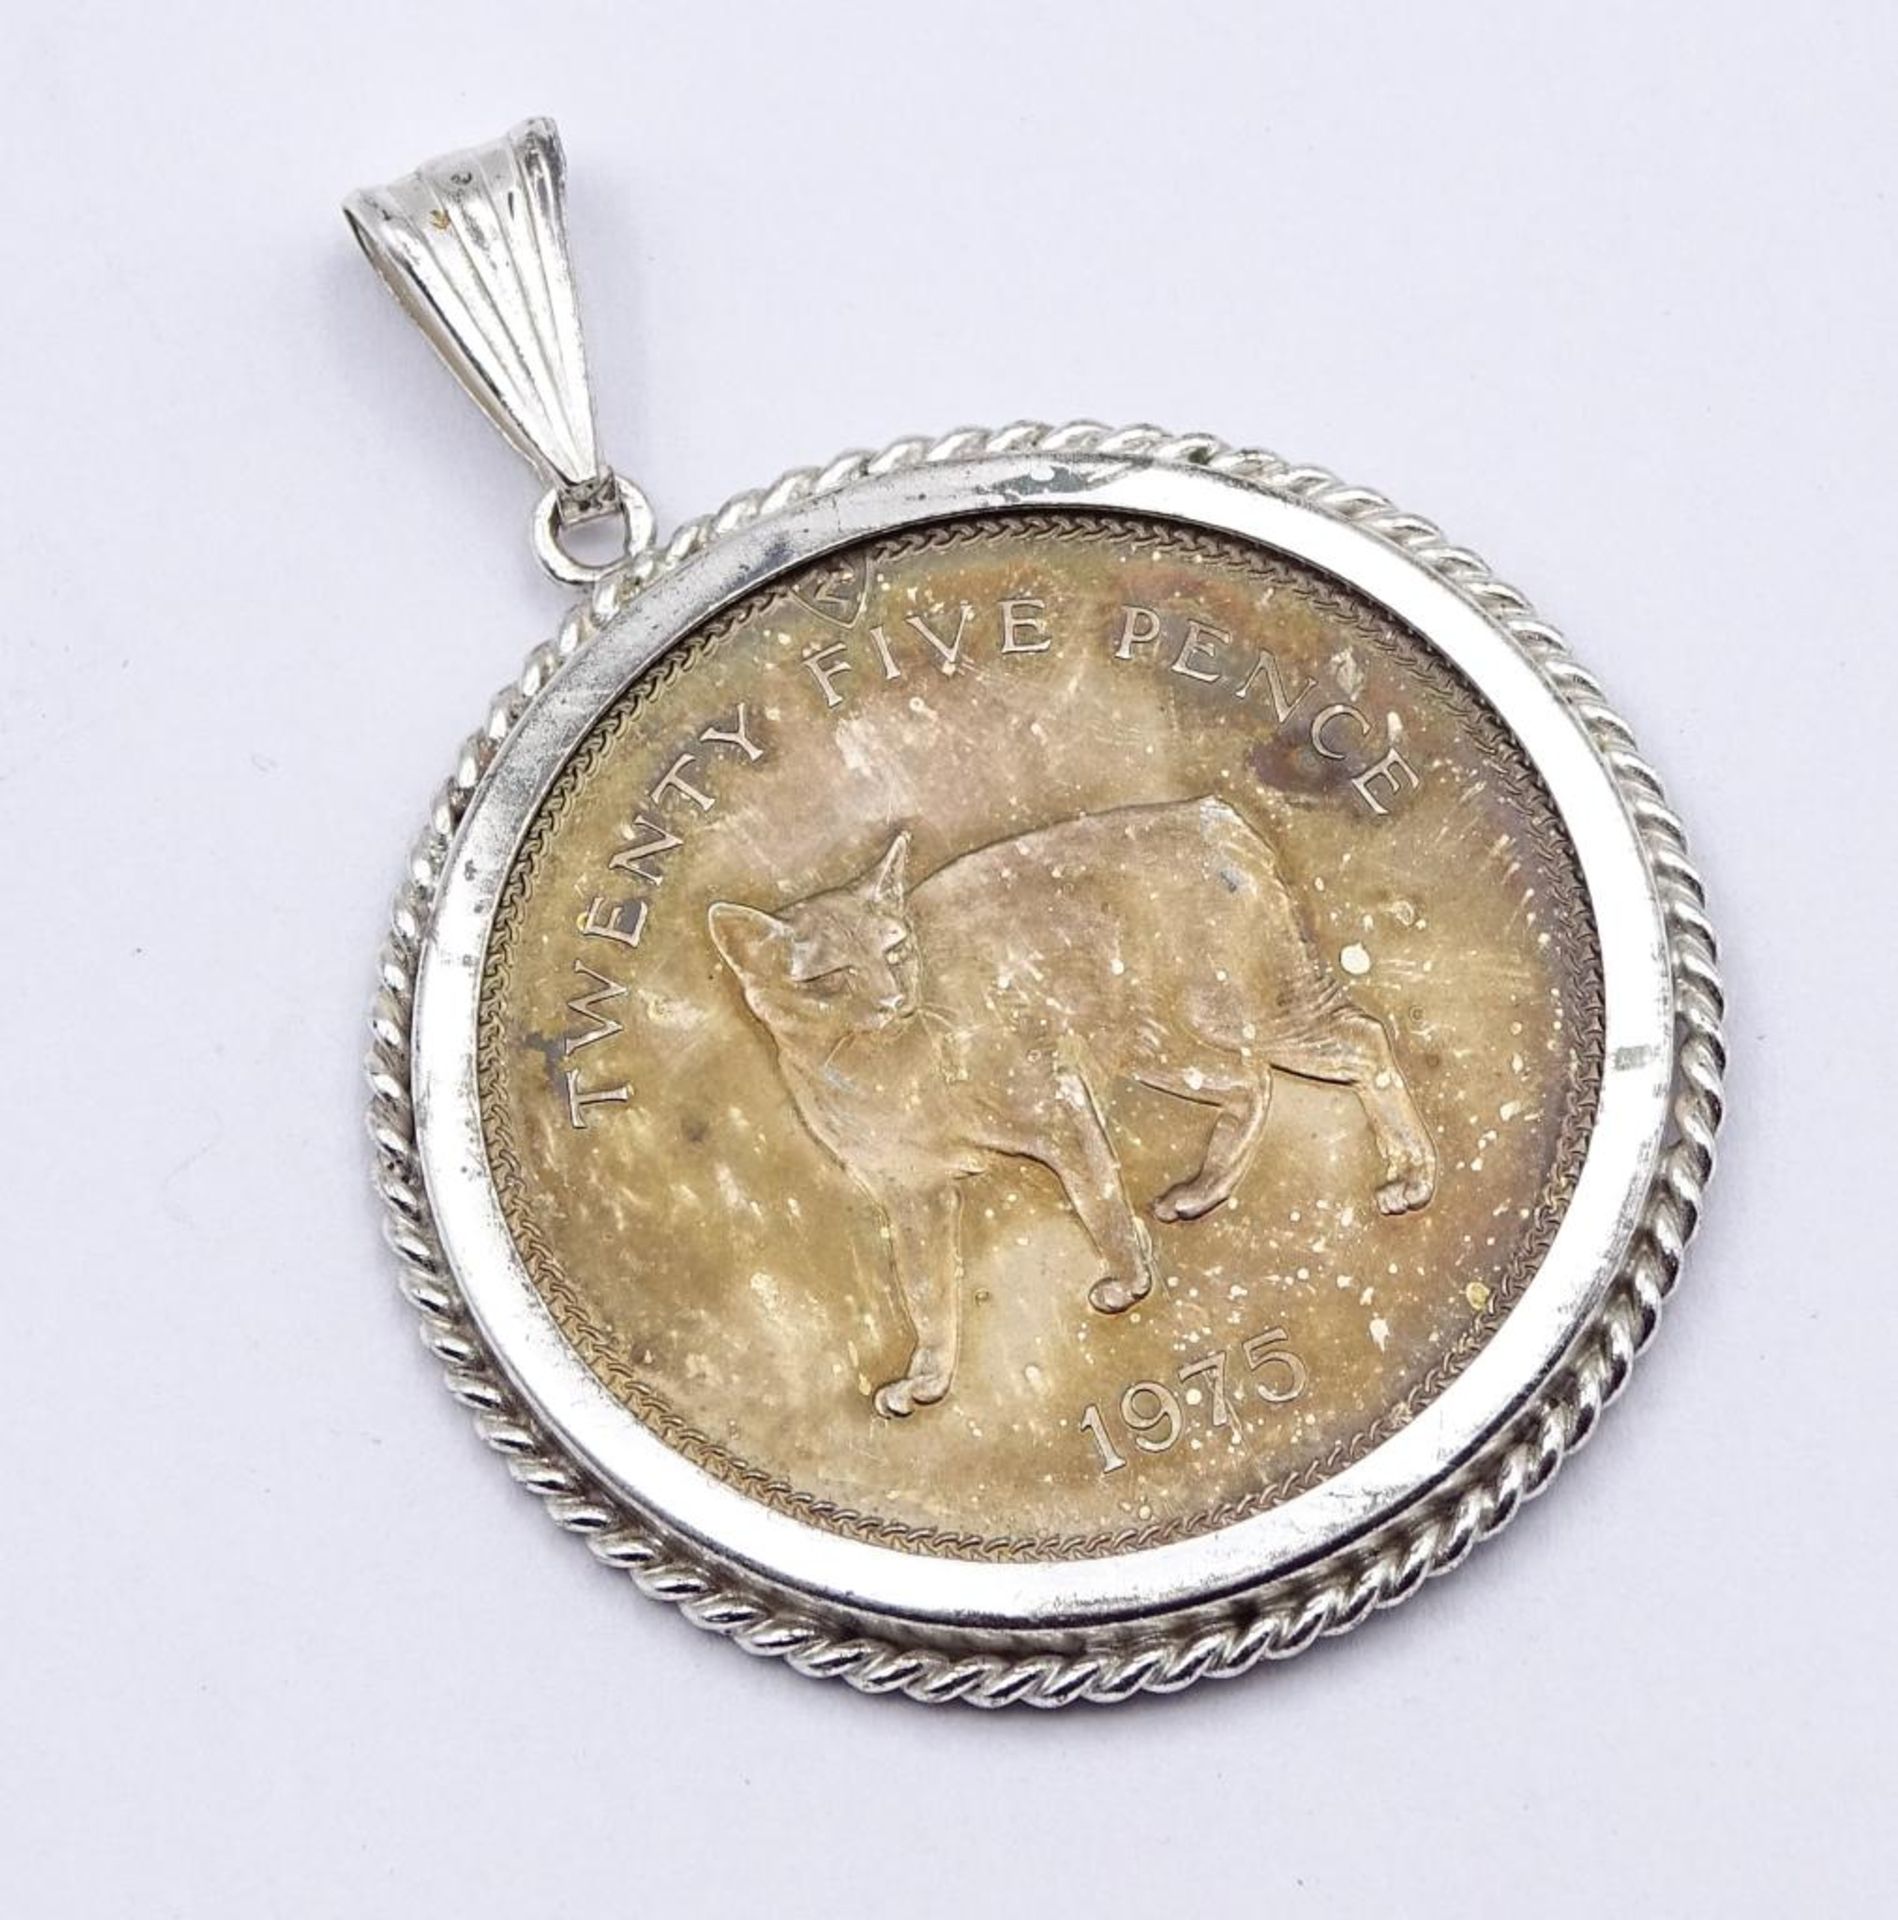 25 Pence 1975 Isle of ManElisabeth II, Silber,gefasst in Silberfassung 835/000,ges.Gew.33,1gr. - Bild 2 aus 2